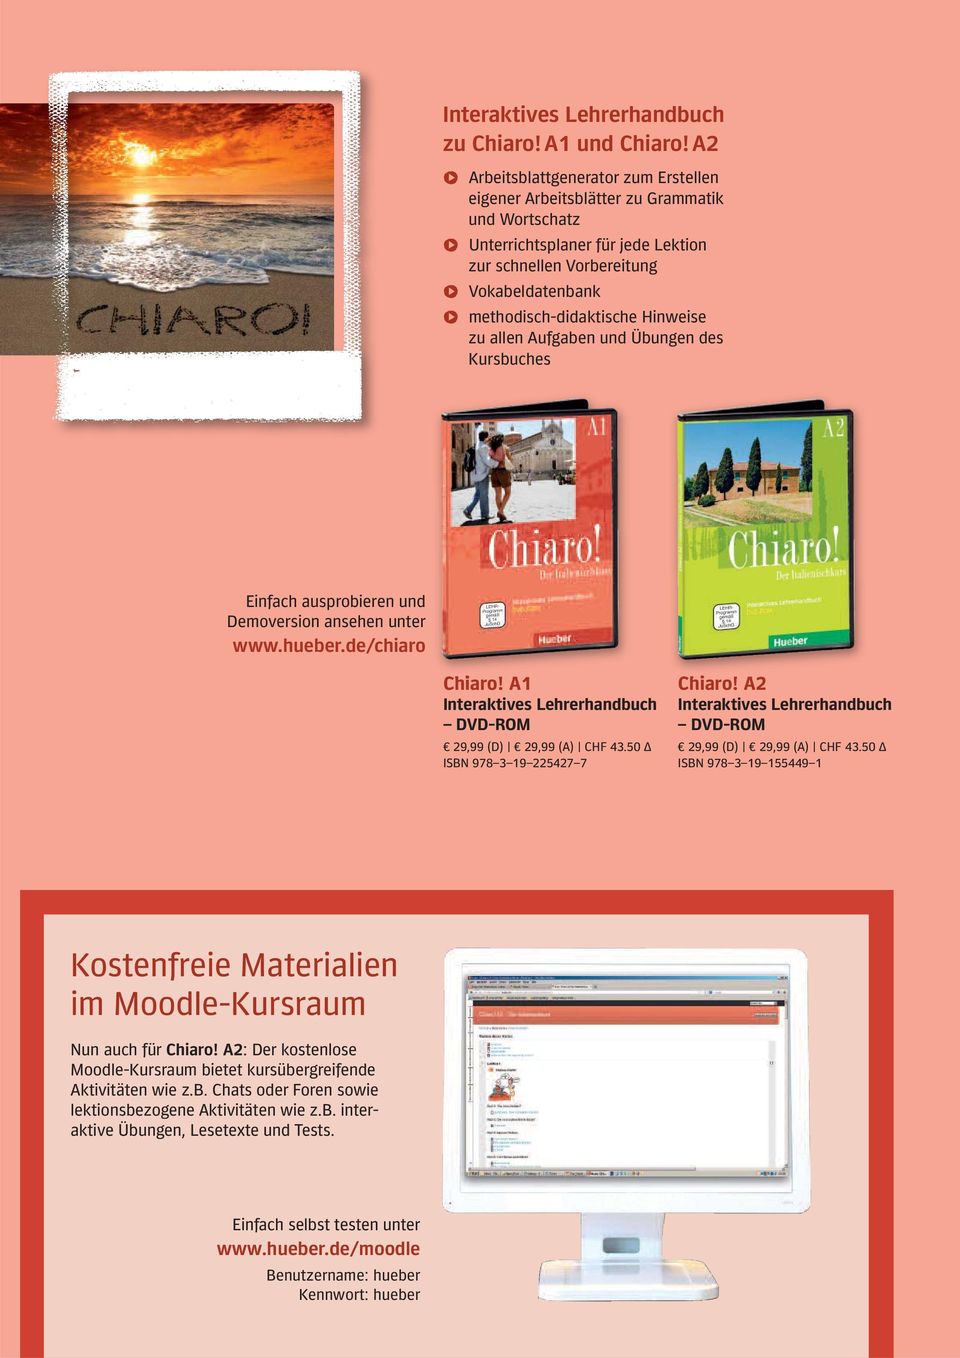 Hinweise zu allen Aufgaben und Übungen des Kursbuches Einfach ausprobieren und Demoversion ansehen unter www.hueber.de/chiaro Interaktives Lehrerhandbuch DVD-ROM 29,99 (D) 29,99 (A) CHF 43.